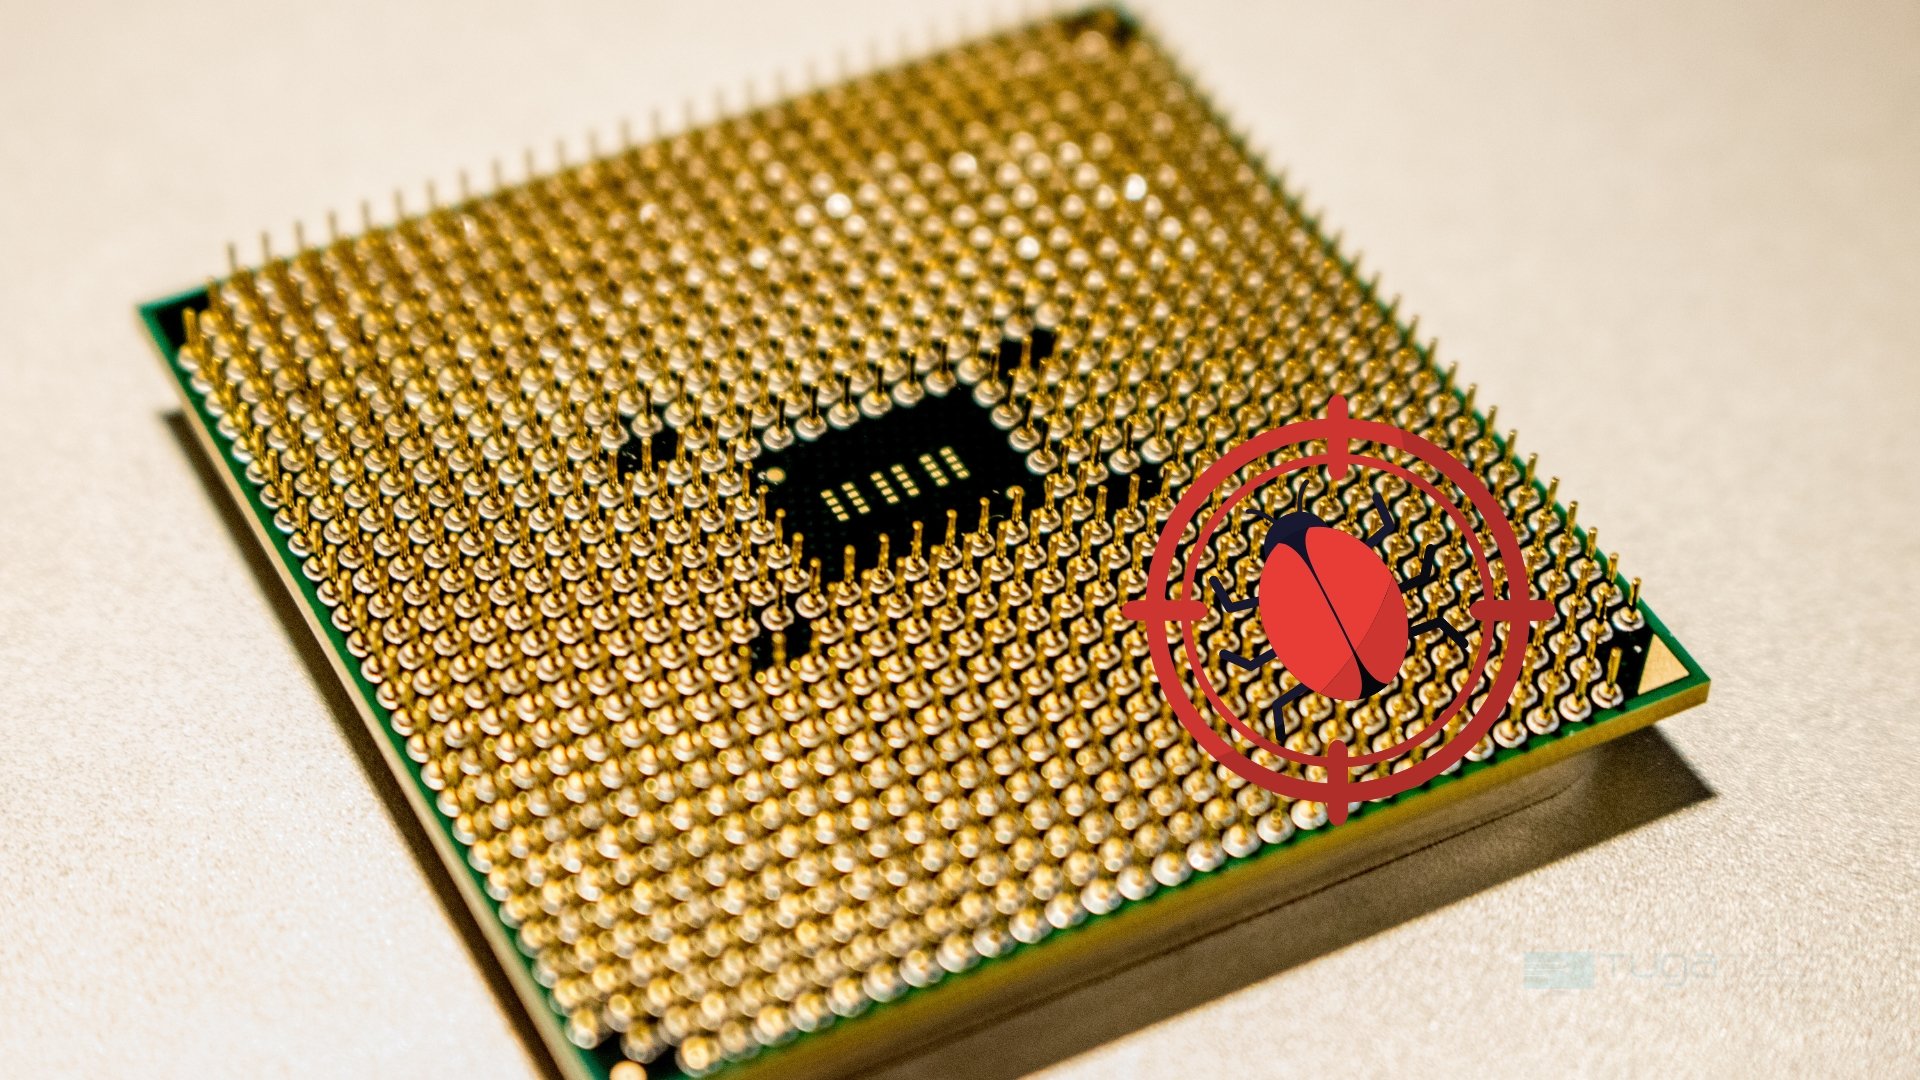 Processador da AMD com bug